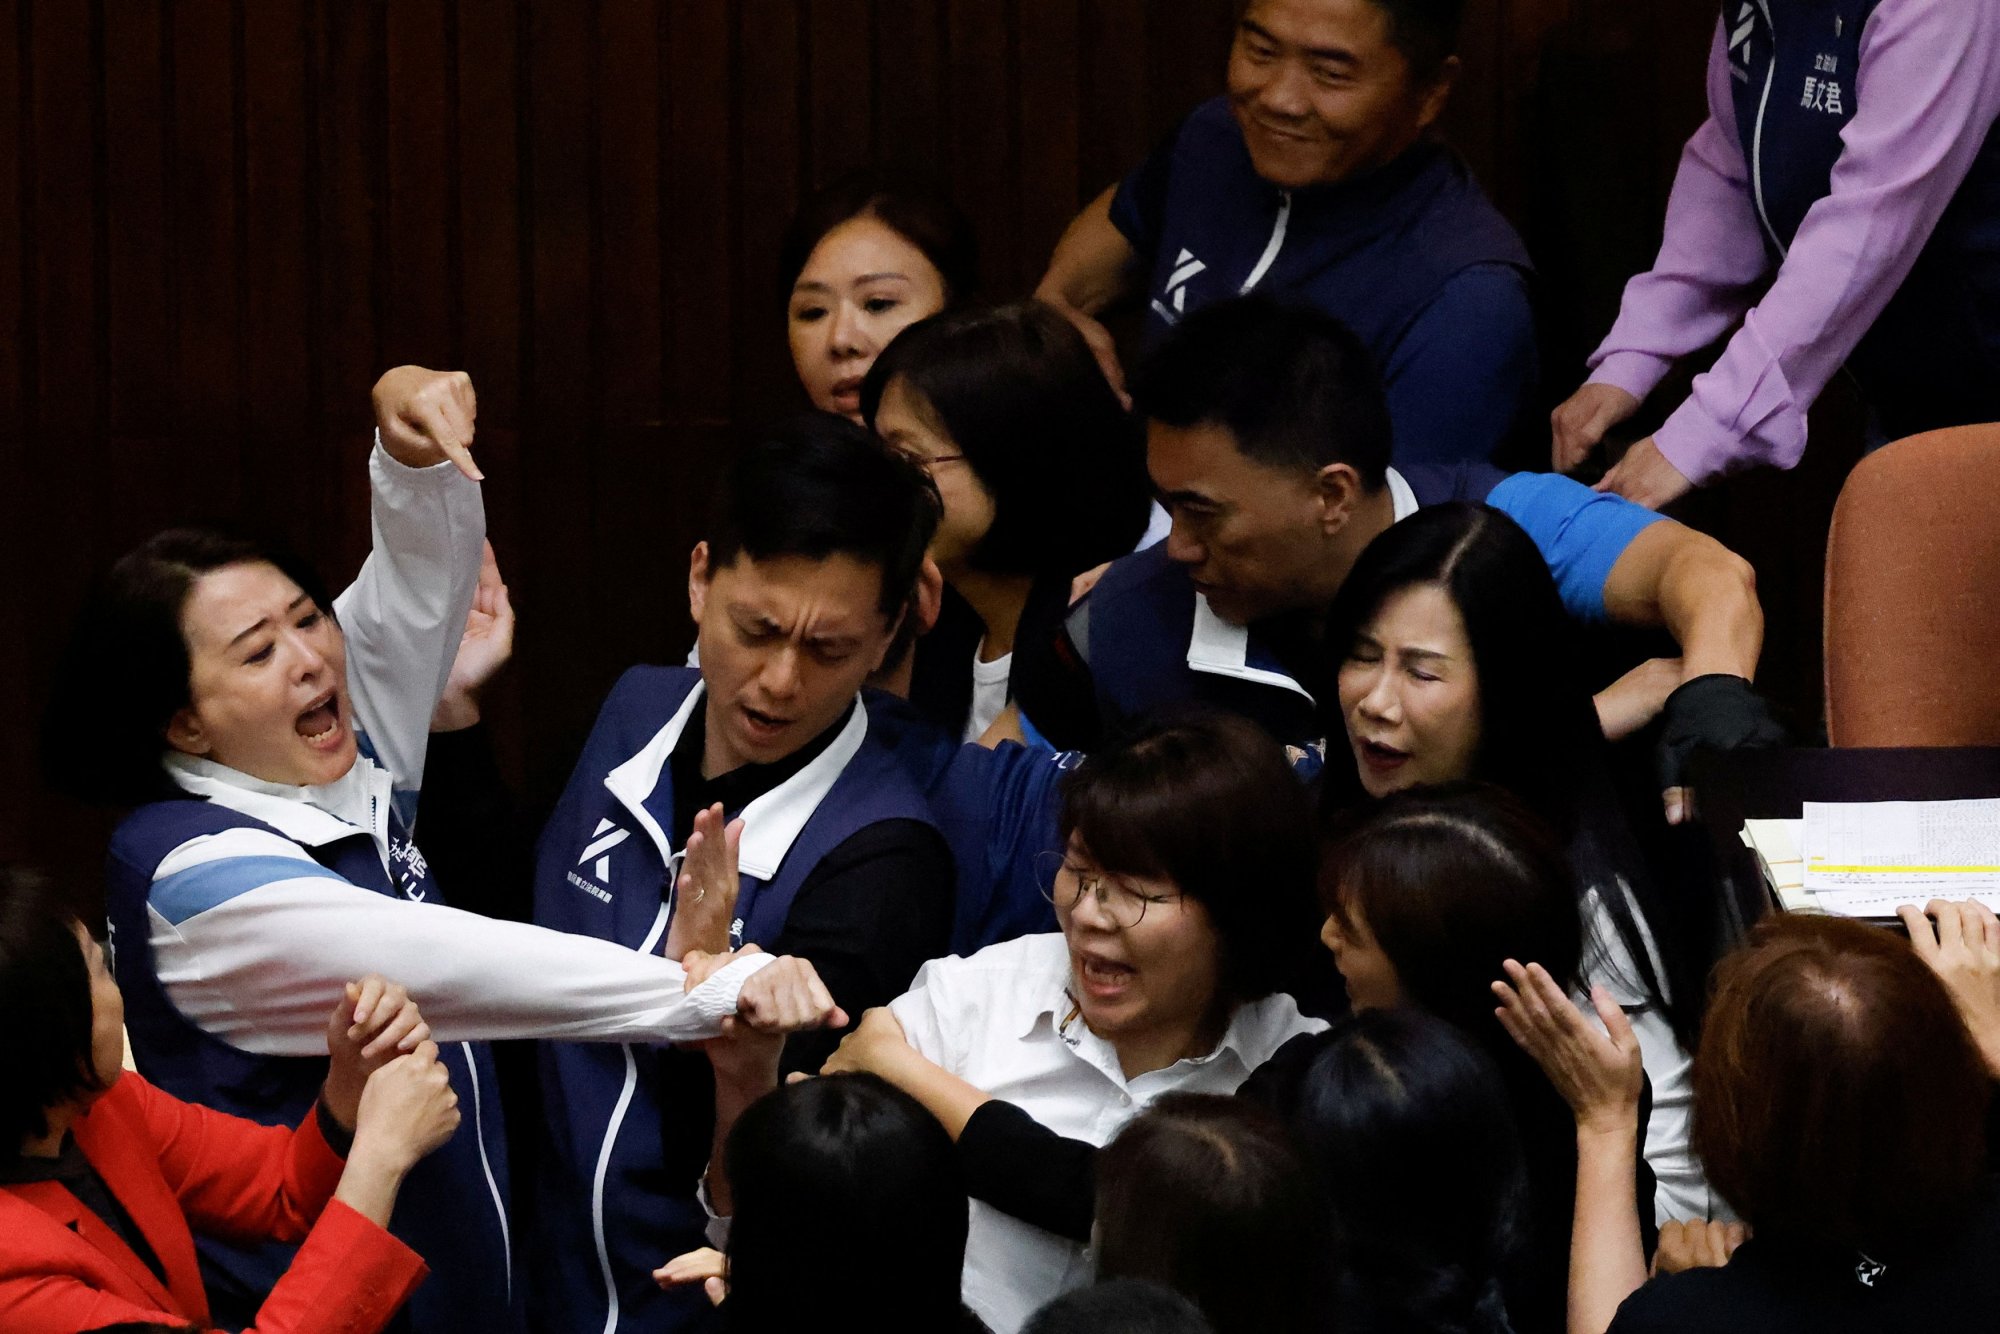 Ξύλο μεταξύ βουλευτών κατά τη διάρκεια κοινοβουλευτικής συνεδρίασης στην Ταϊβάν (Πηγή: REUTERS/Ann Wang)